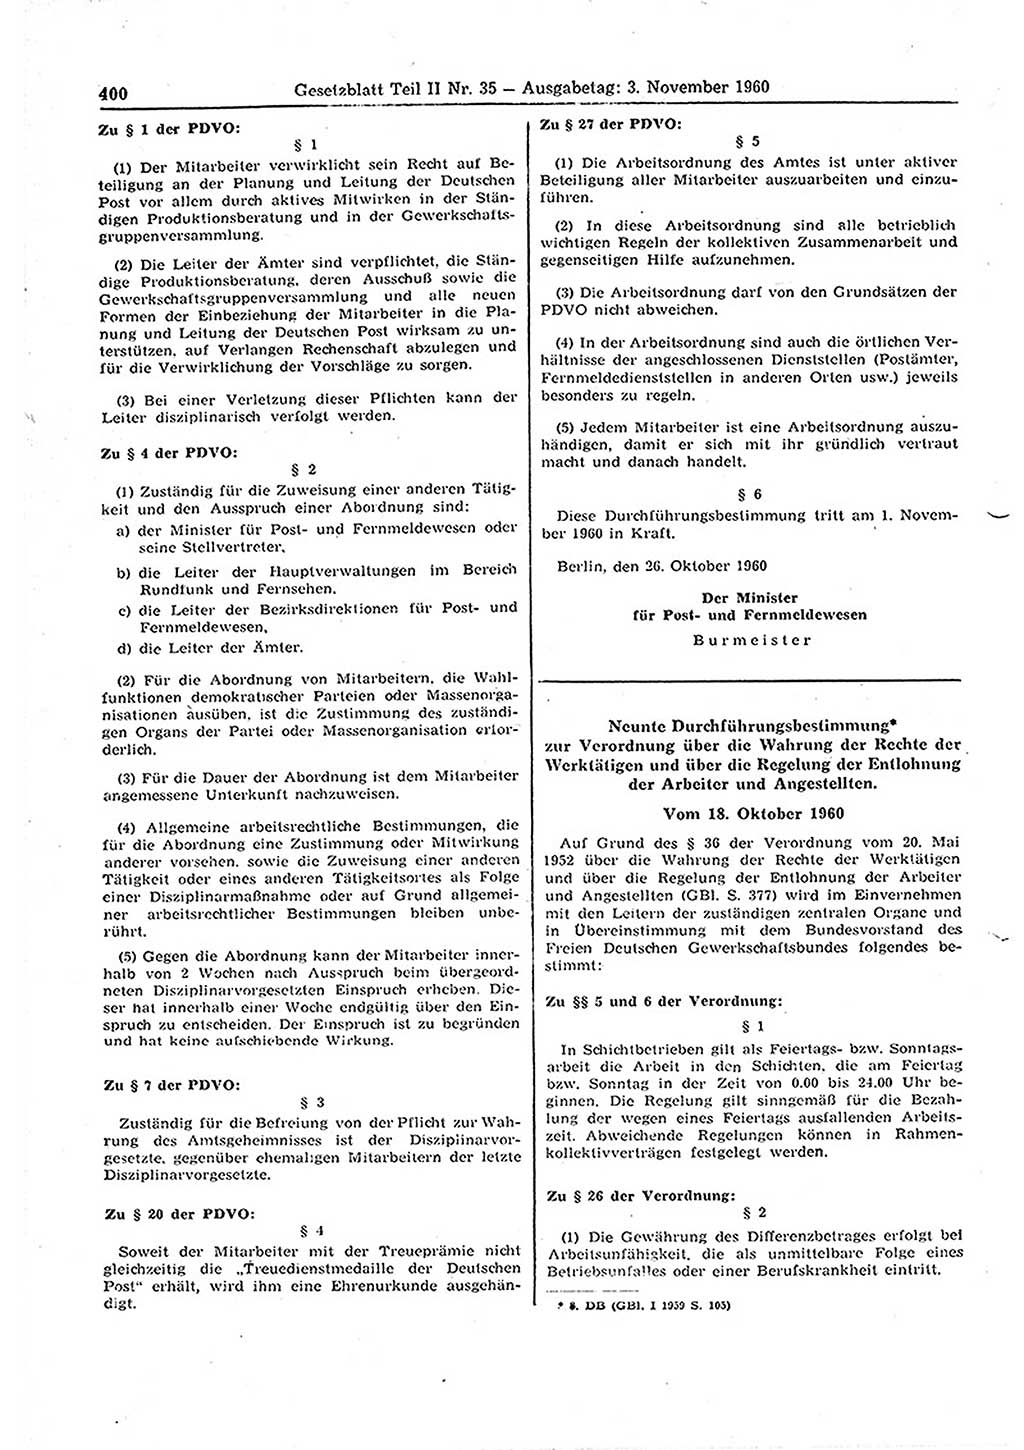 Gesetzblatt (GBl.) der Deutschen Demokratischen Republik (DDR) Teil ⅠⅠ 1960, Seite 400 (GBl. DDR ⅠⅠ 1960, S. 400)